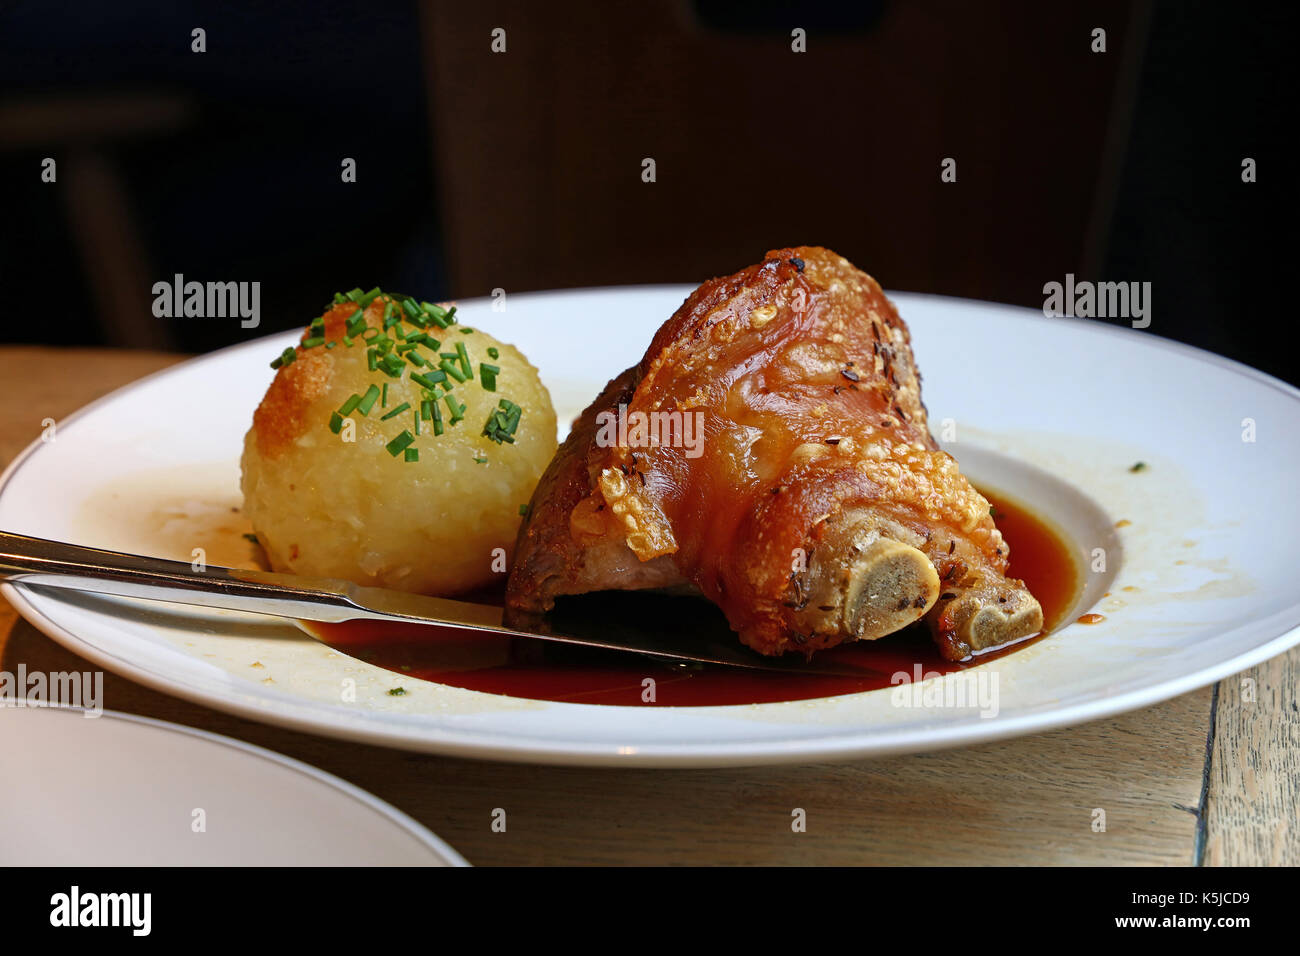 Porción de asado de cerdo suculento avance pivote o mango con cebollino y dumplings de Baviera en la placa sobre la mesa, cerrar, bajo ángulo de visión Foto de stock